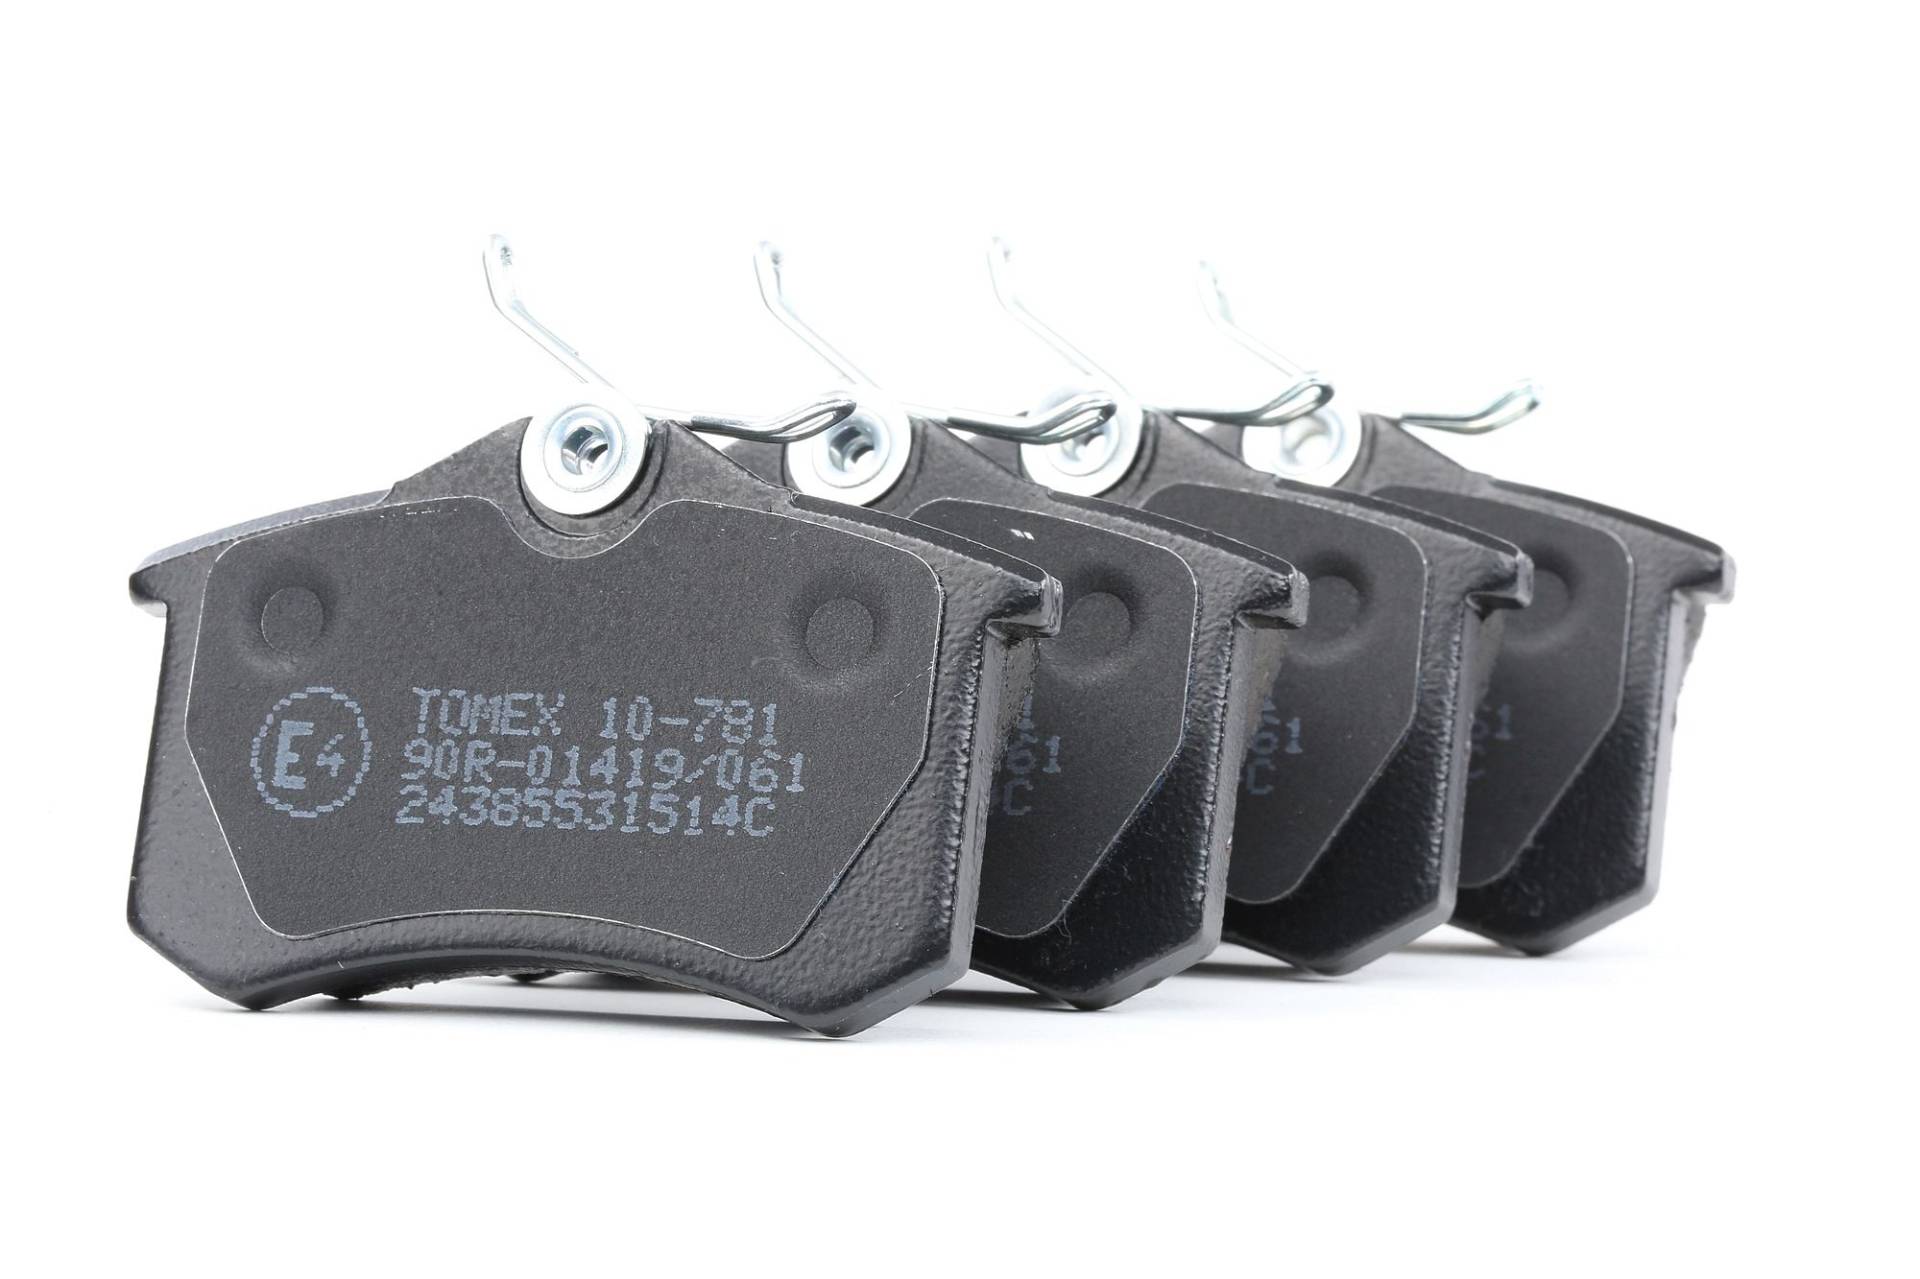 TOMEX brakes Bremsbelagsatz VW,AUDI,FORD TX 10-781 1E0698451,1E0698451B,1E0698451C 1E0698451D,1E0698451E,1E0698451G,1H0615415,1H0615415A,1H0615415D von TOMEX brakes